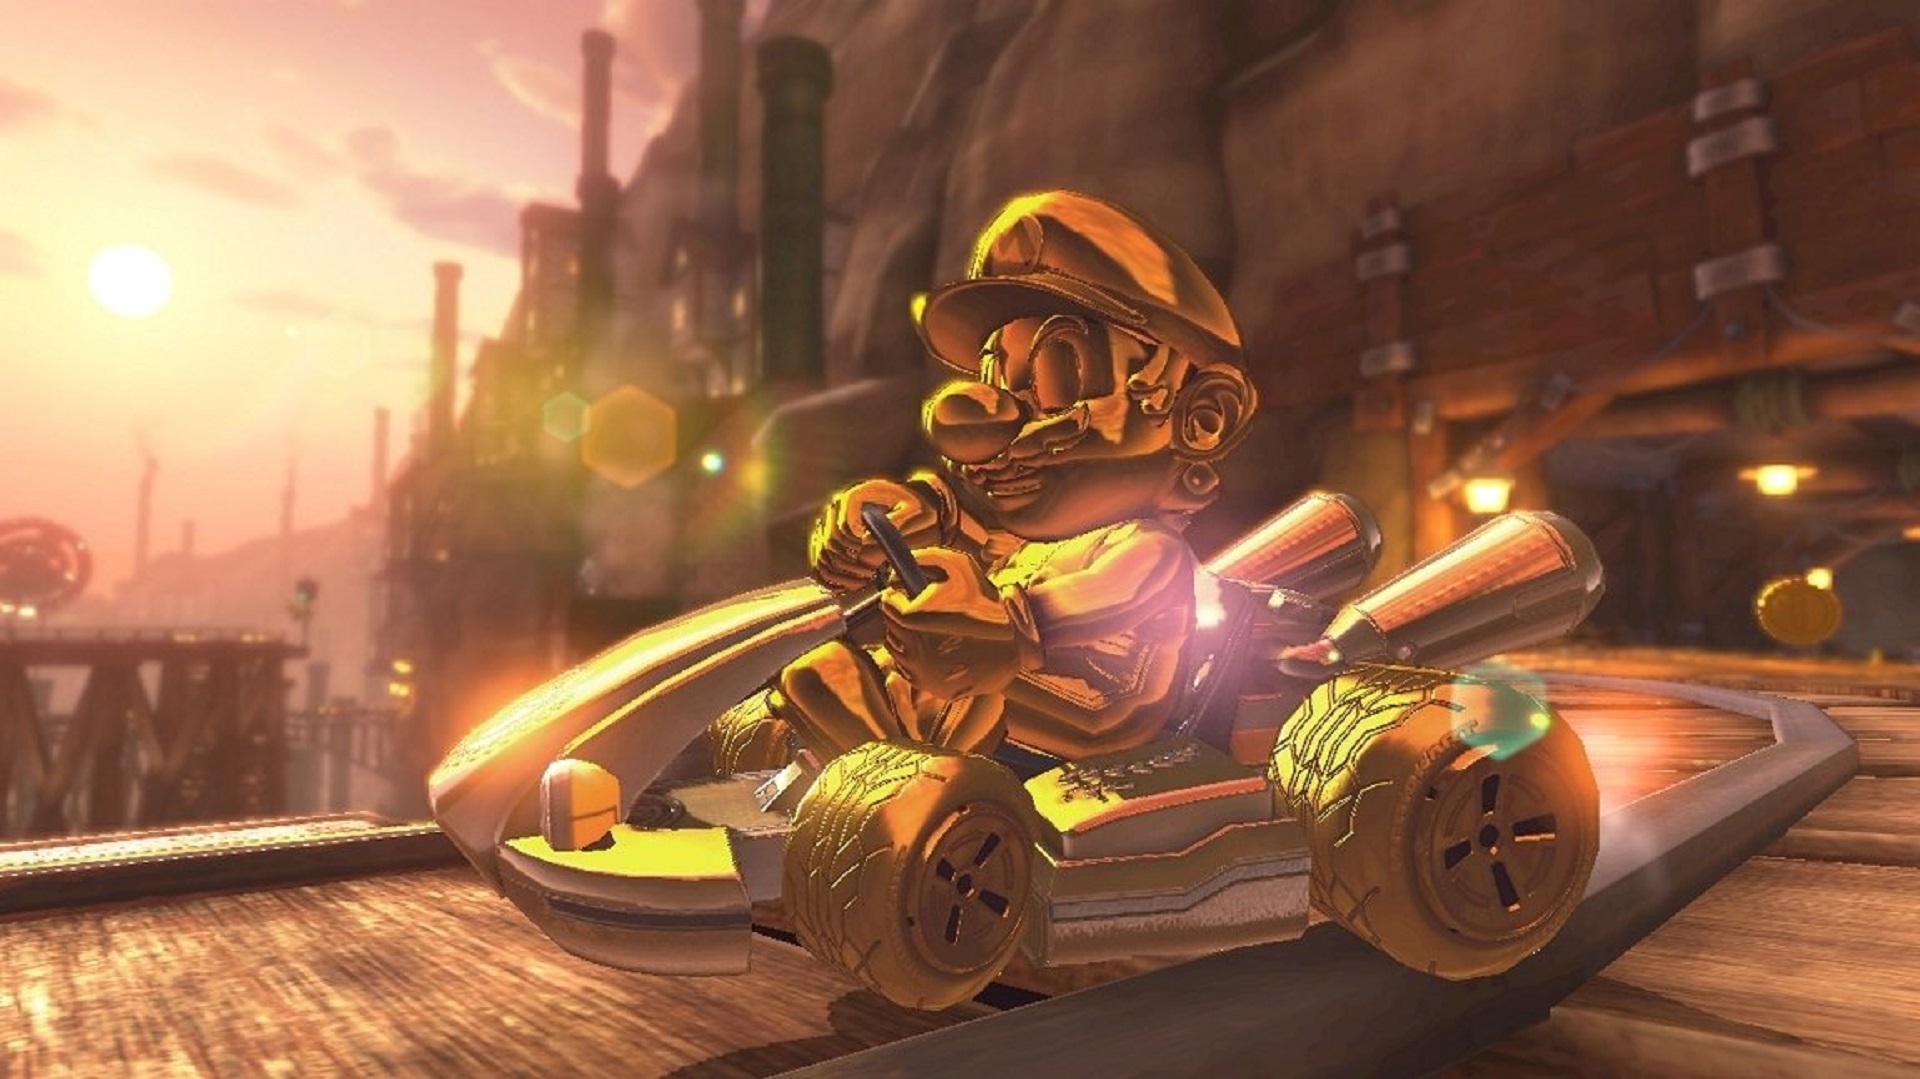 Gold Mario, единственный играбельный персонаж среди Mario Kart 8 Deluxe разблокируется